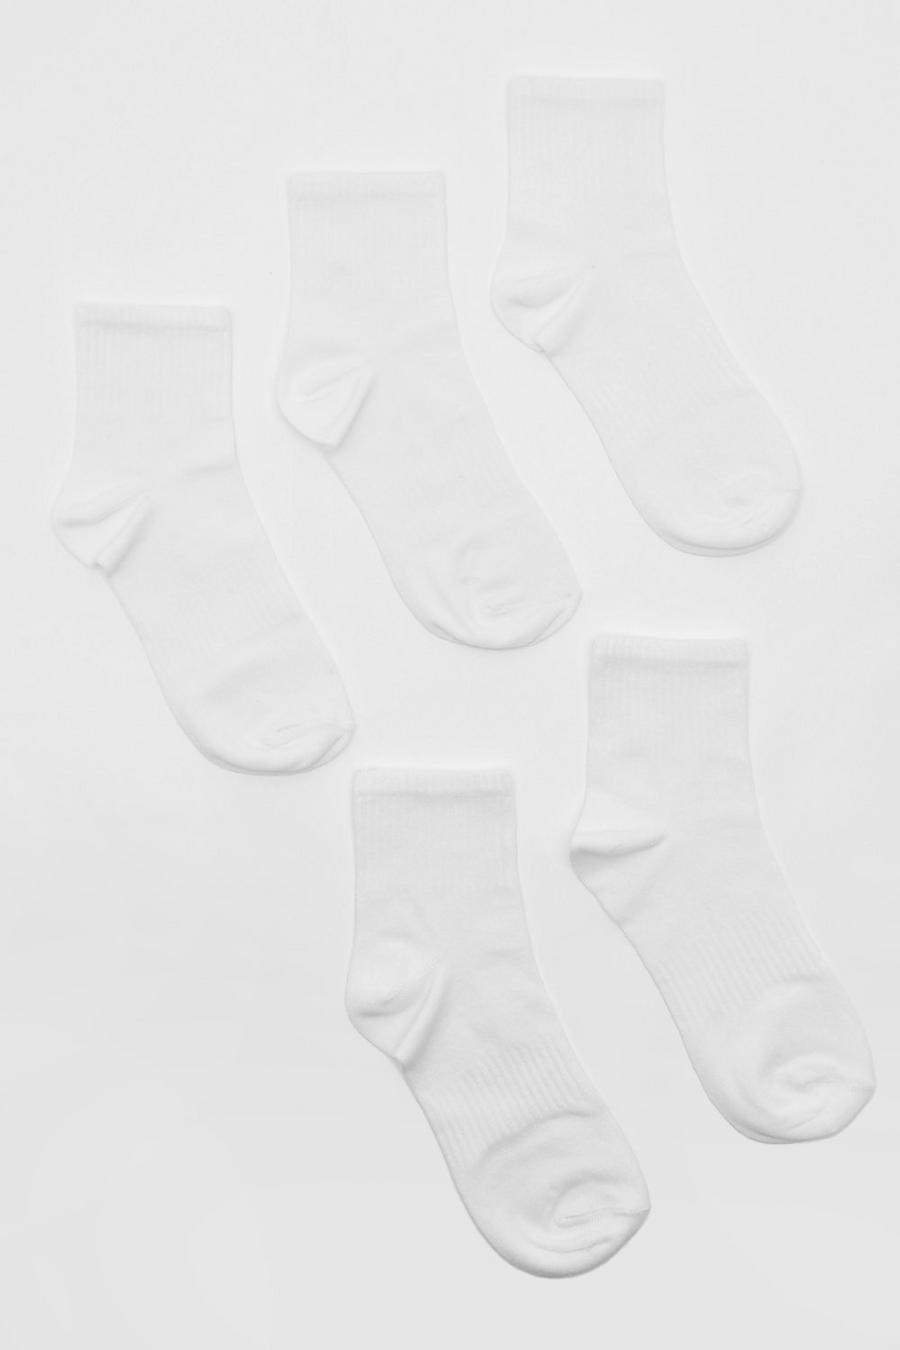 Calzini sportivi alla caviglia bianchi in tinta unita - set di 5 paia, White bianco